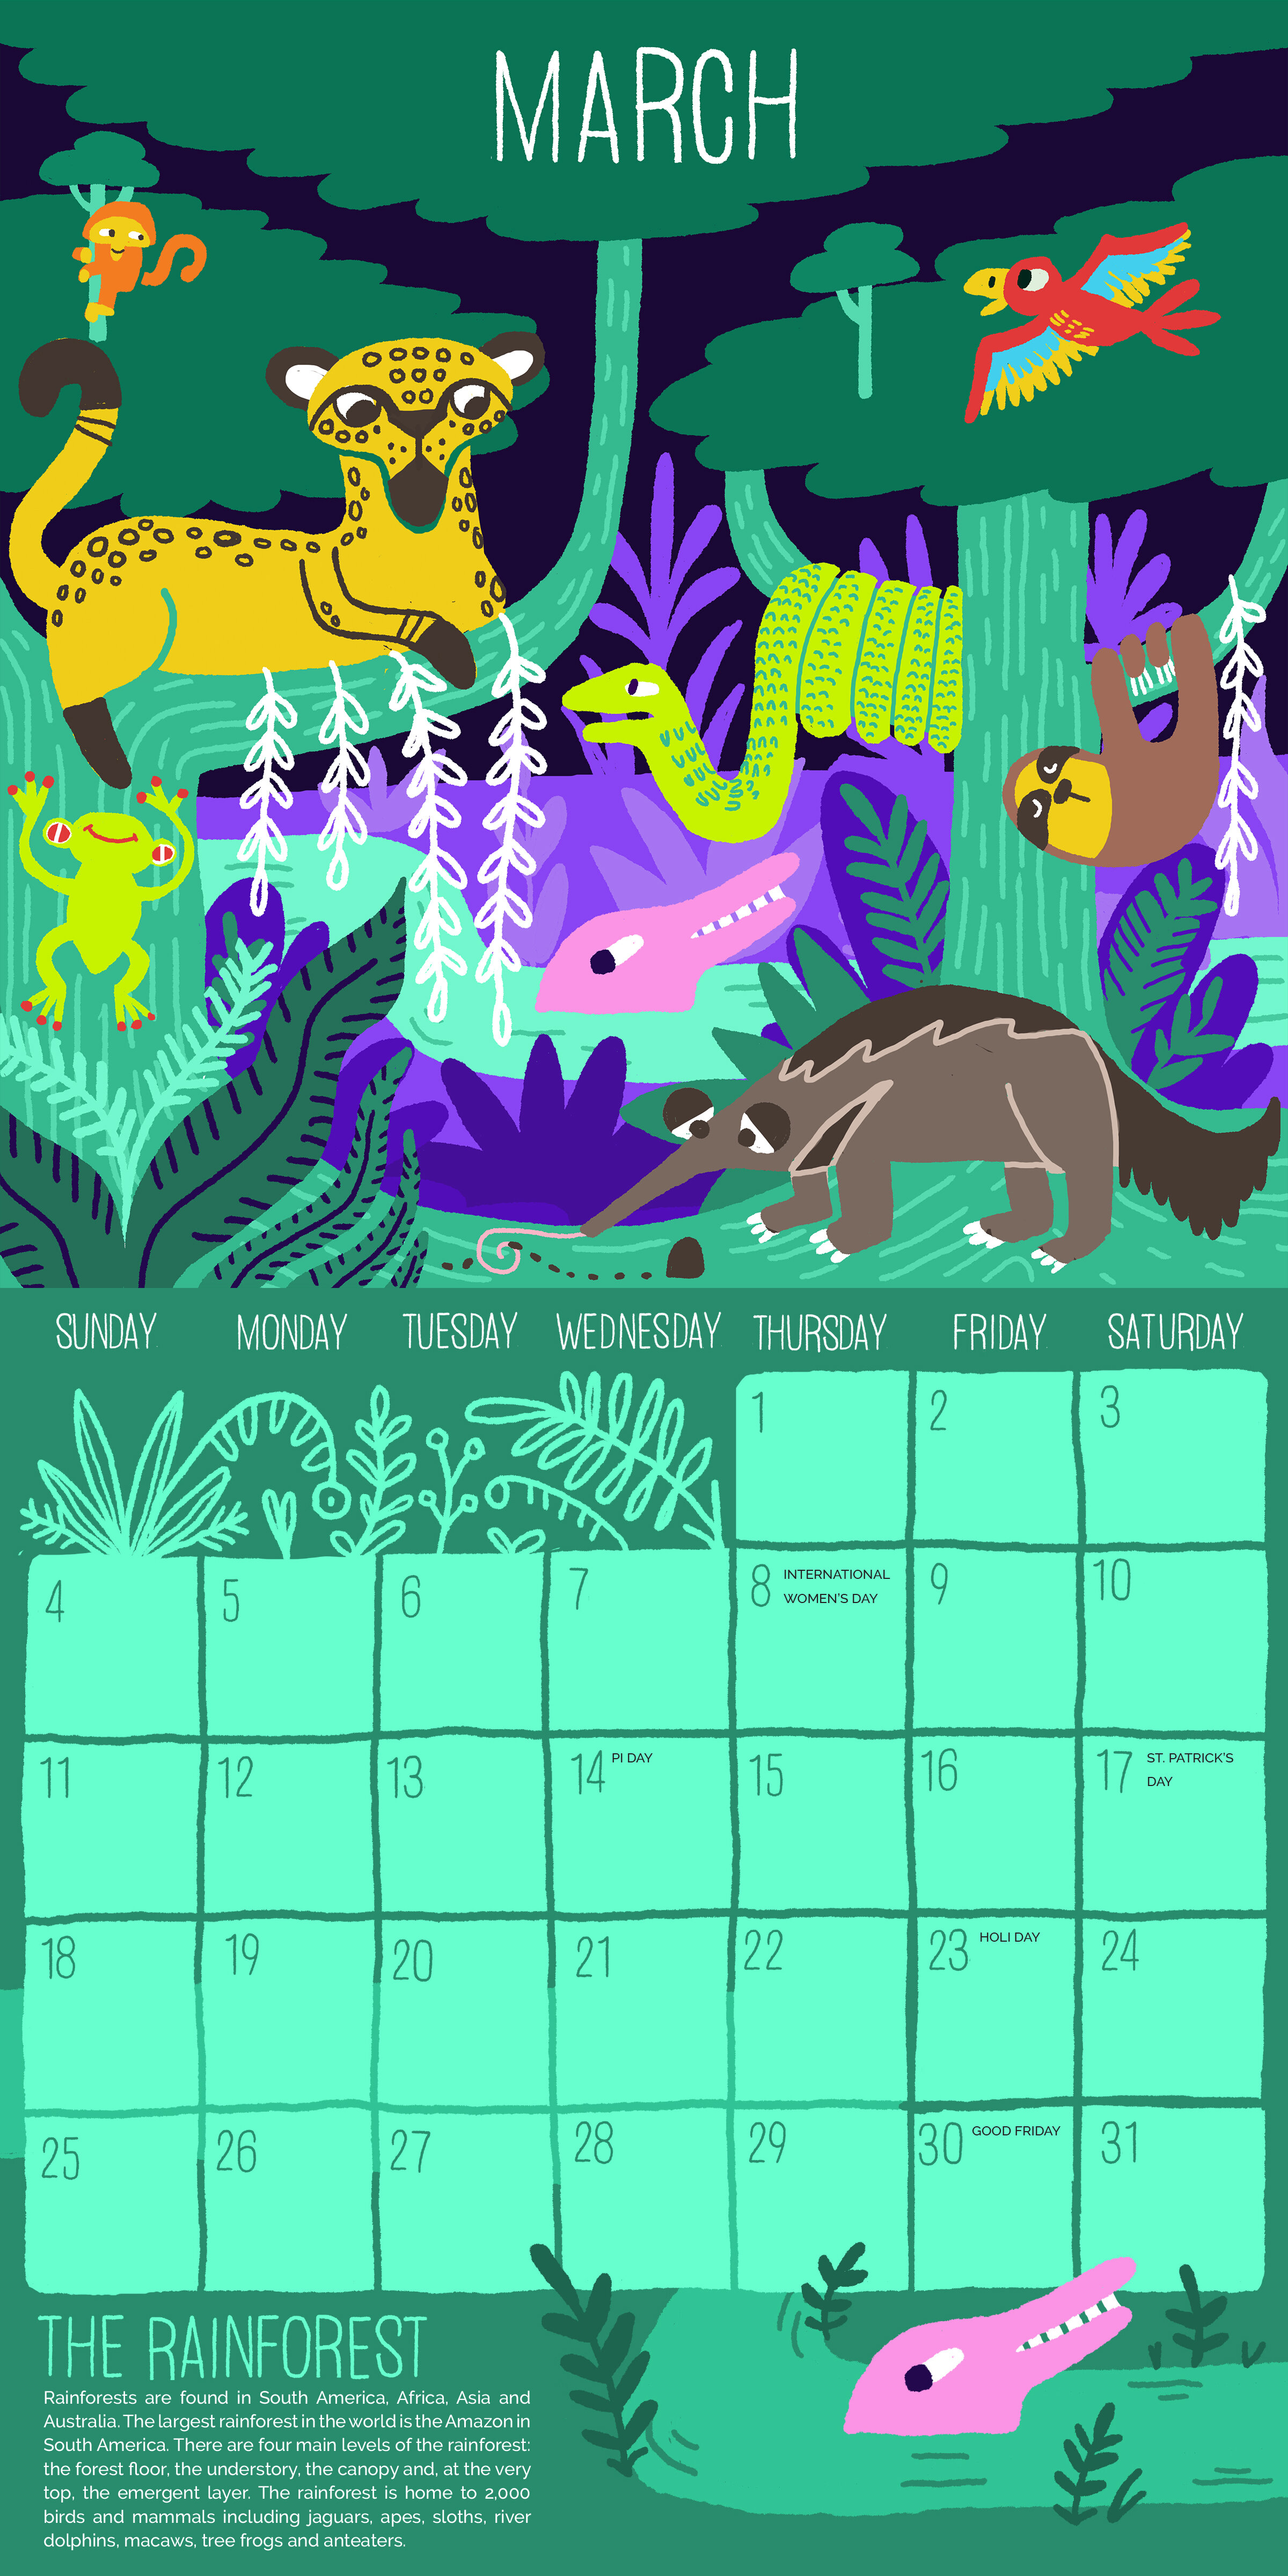 Call of the Wild Calendar: March (Rainforest)